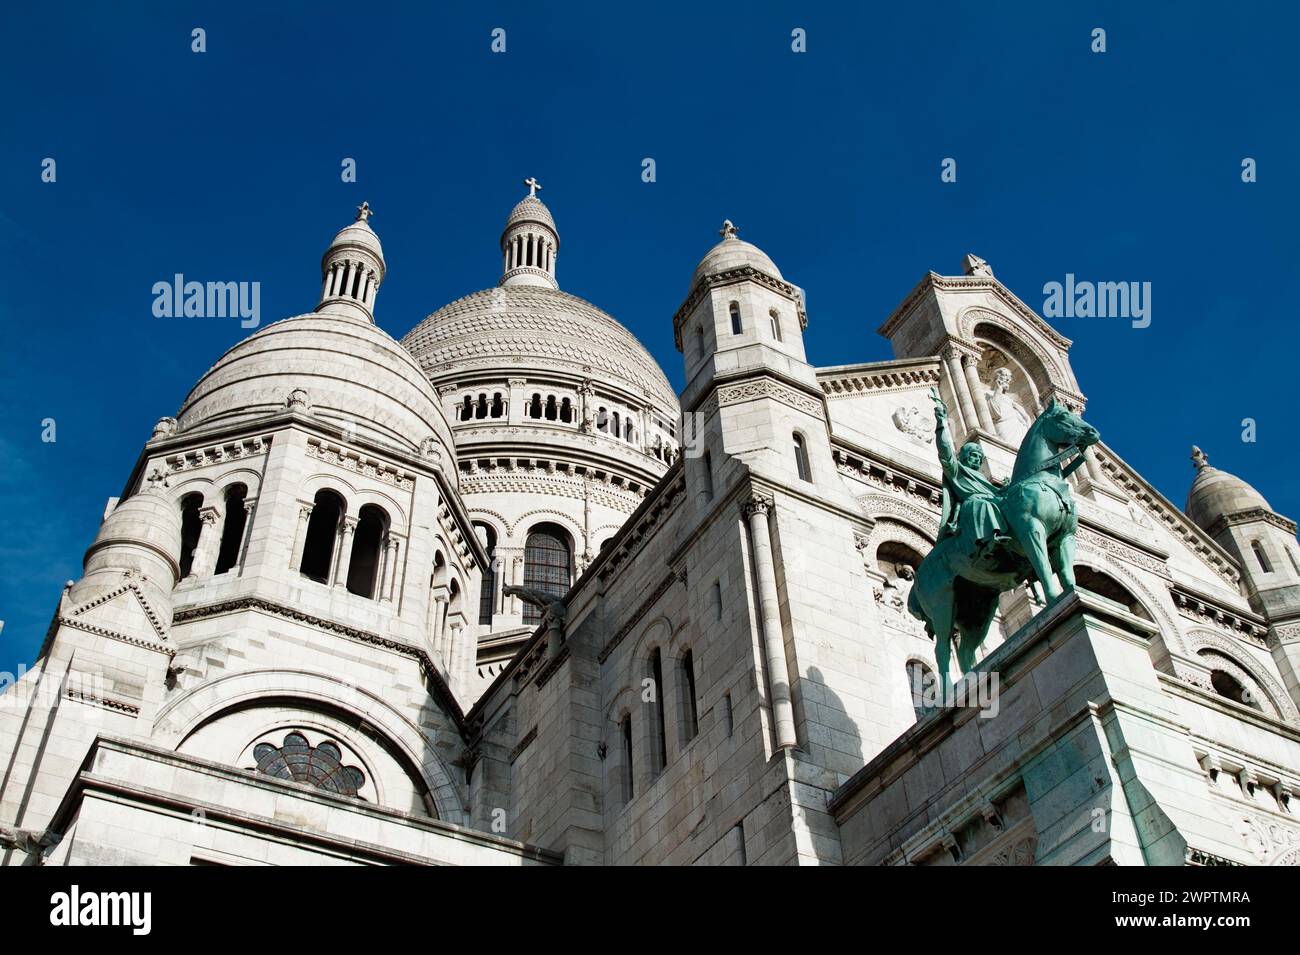 Die Kuppeln, Türme der Südfassade der Basilika Sacré Coeur de Montmartre mit der Bronzestatue des Pferdeschmuts Saint Louis, Paris, Frankreich Stockfoto